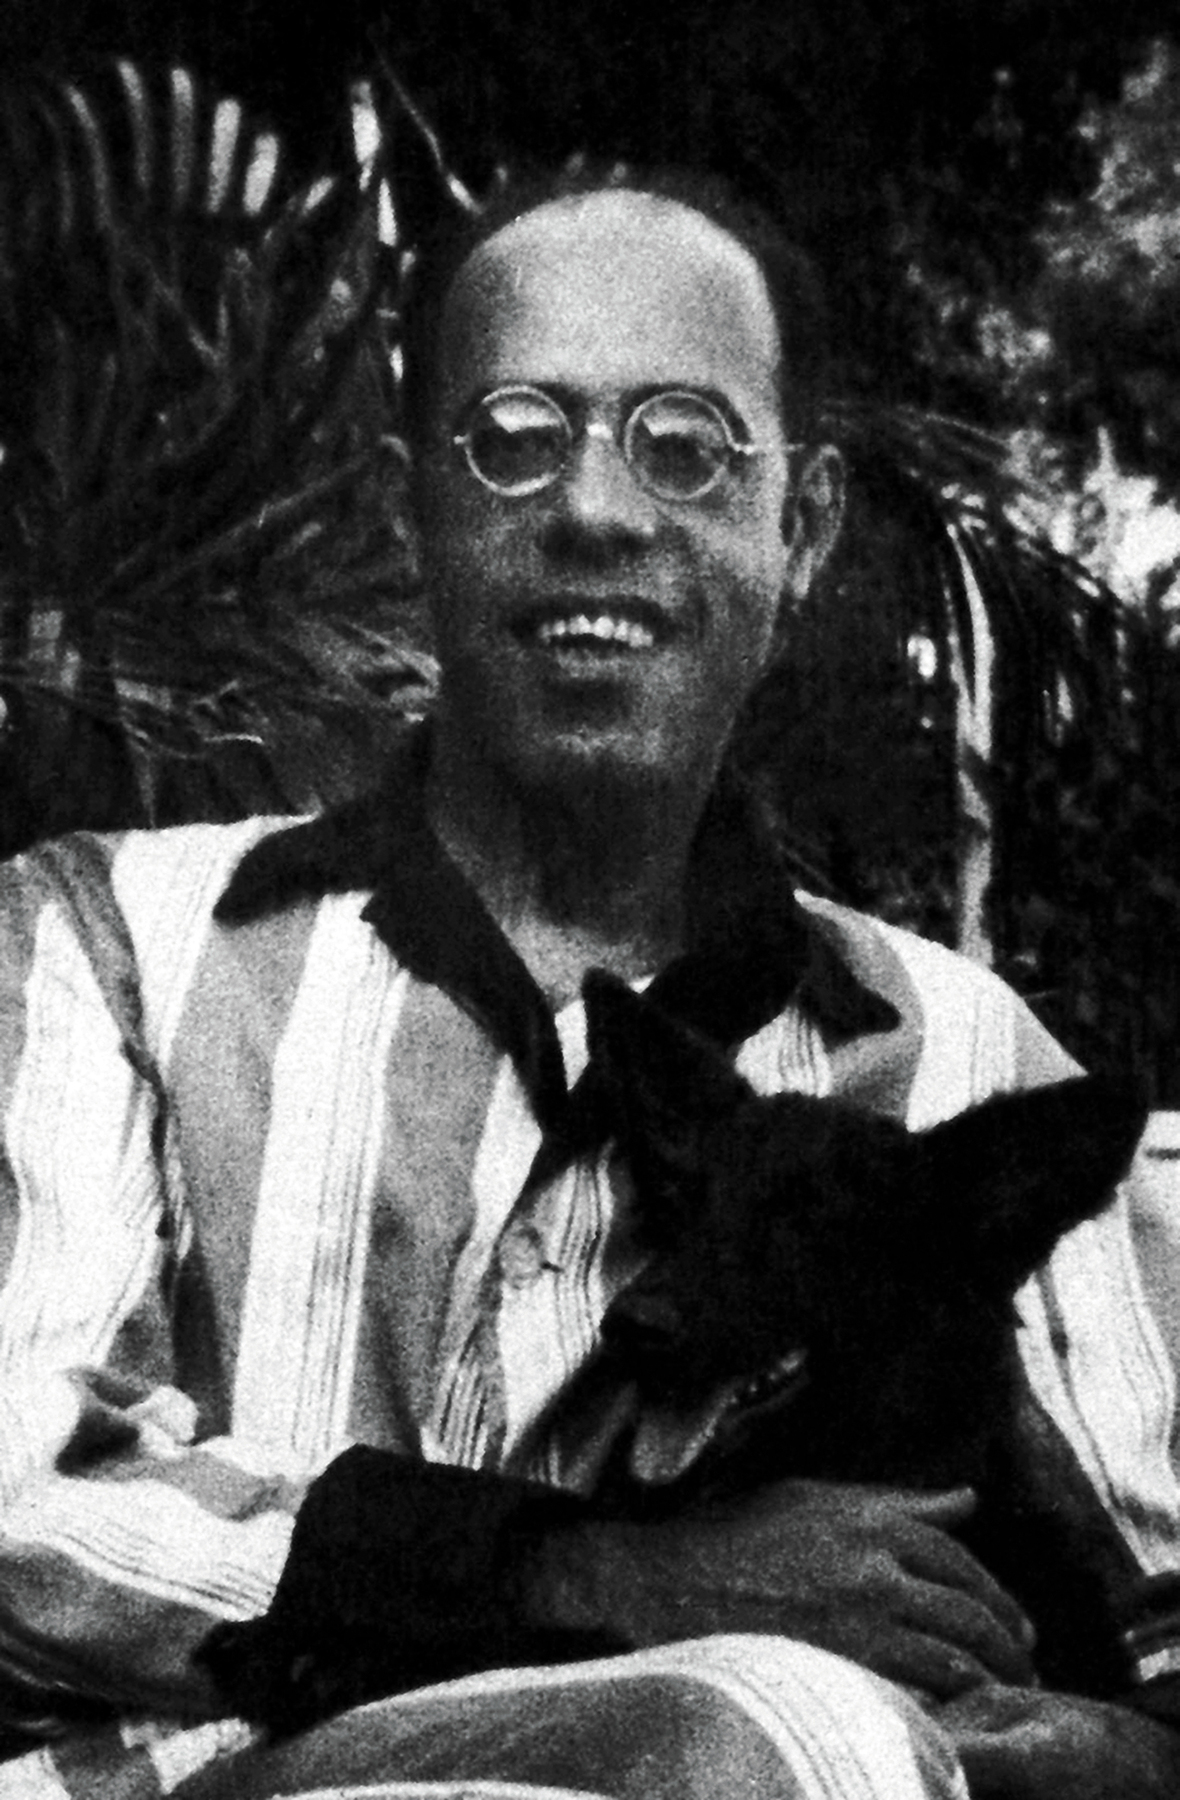 Fotografia em preto e branco. Homem calvo e de óculos, vestido com uma camisa com listas verticais. Ele sorri e segura no colo um cachorro preto de orelhas grandes.